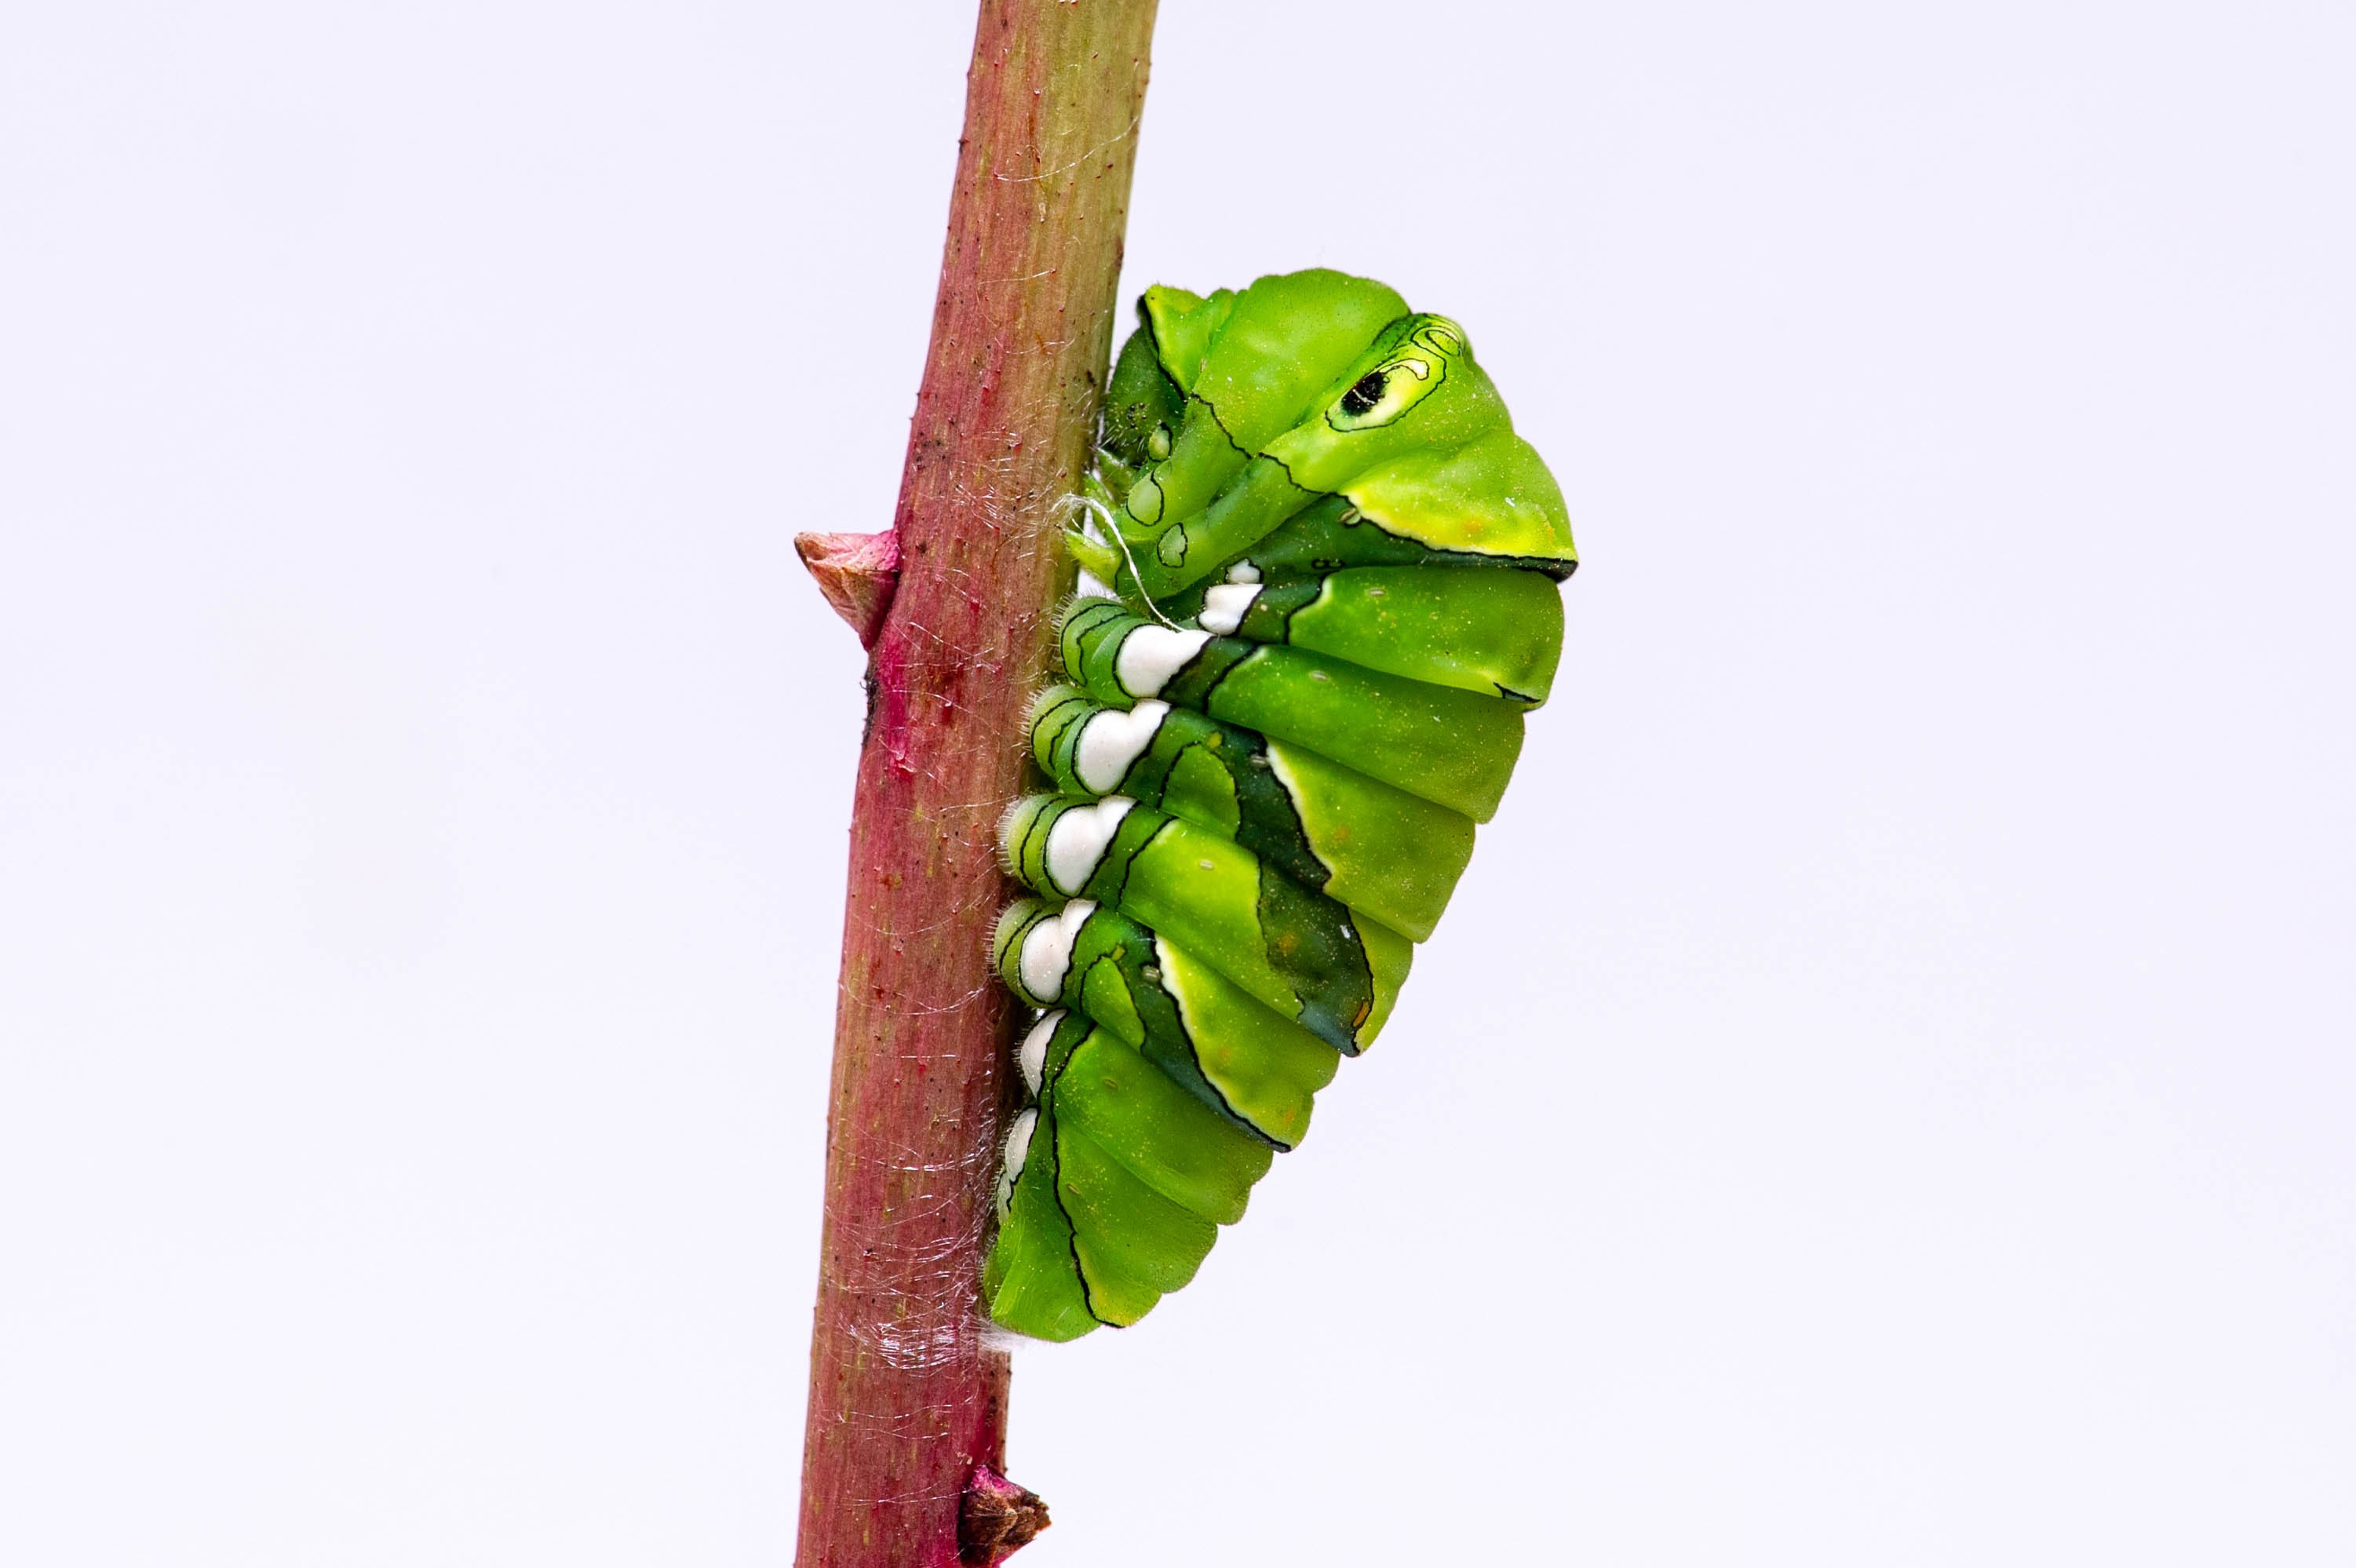 アゲハチョウの前蛹 昆虫写真図鑑 ムシミル